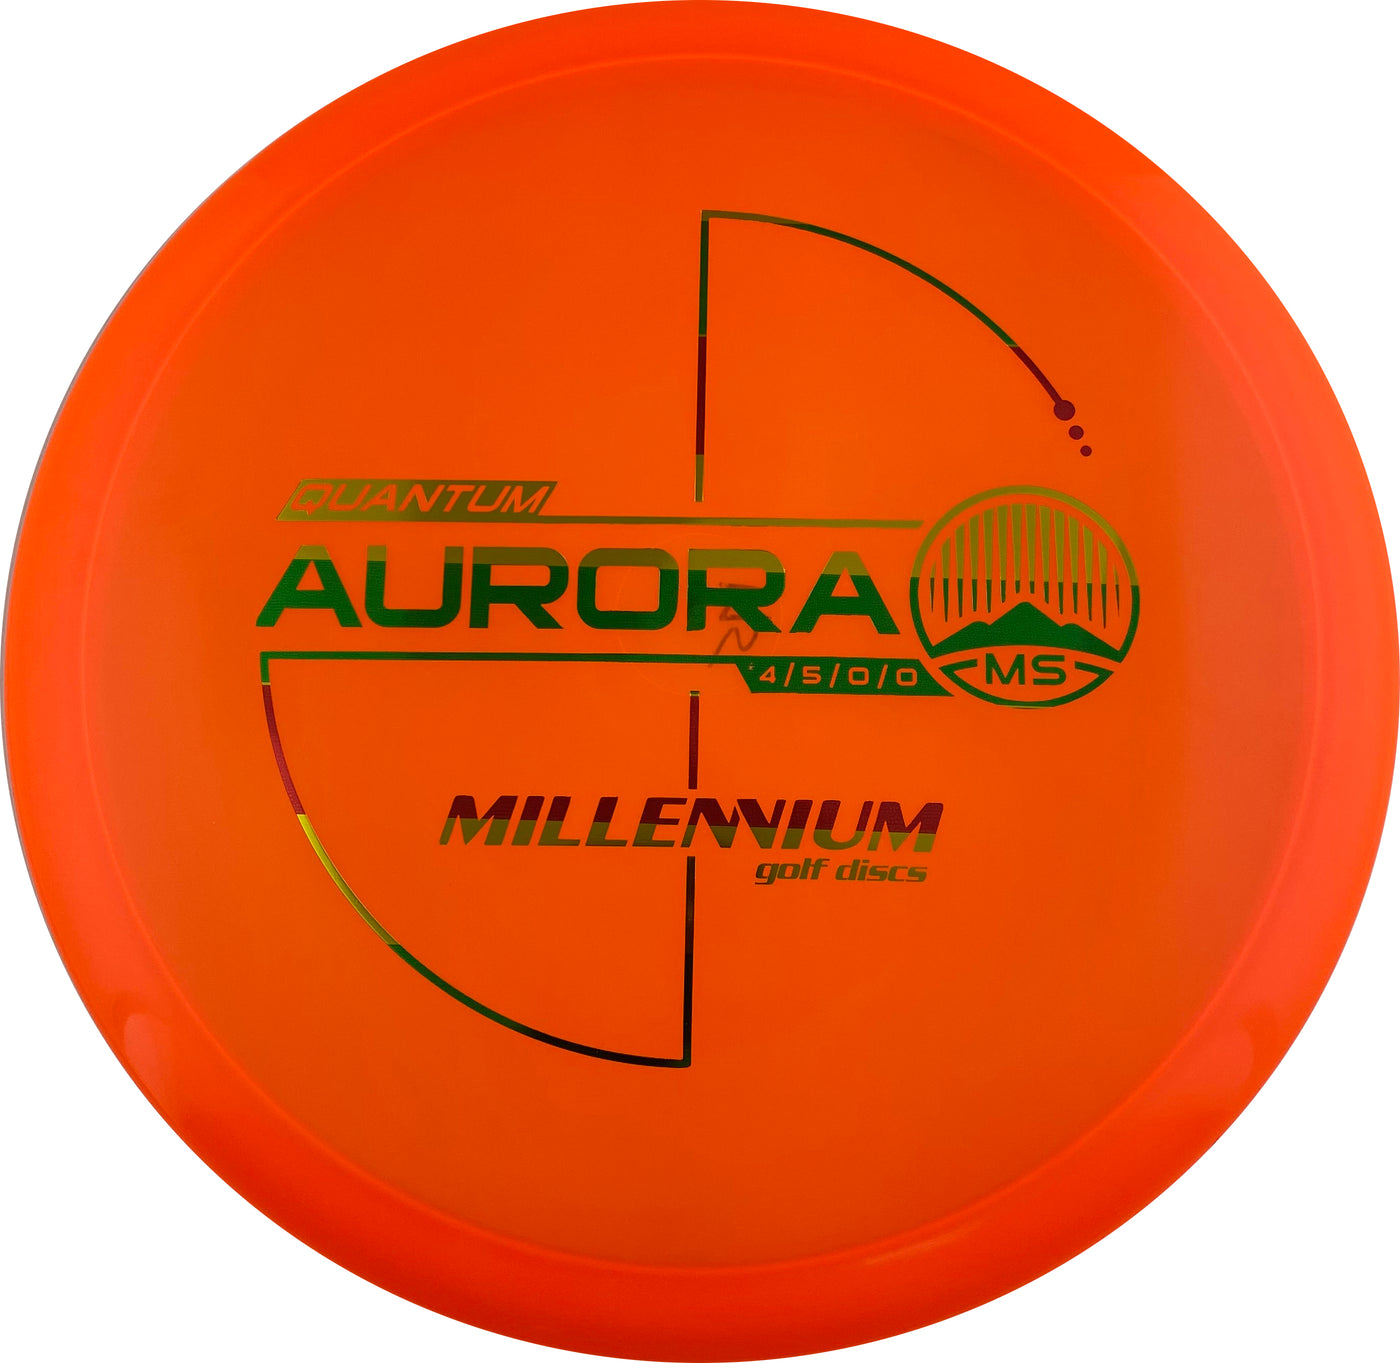 Millennium Quantum Aurora MS Midrange - Speed 4